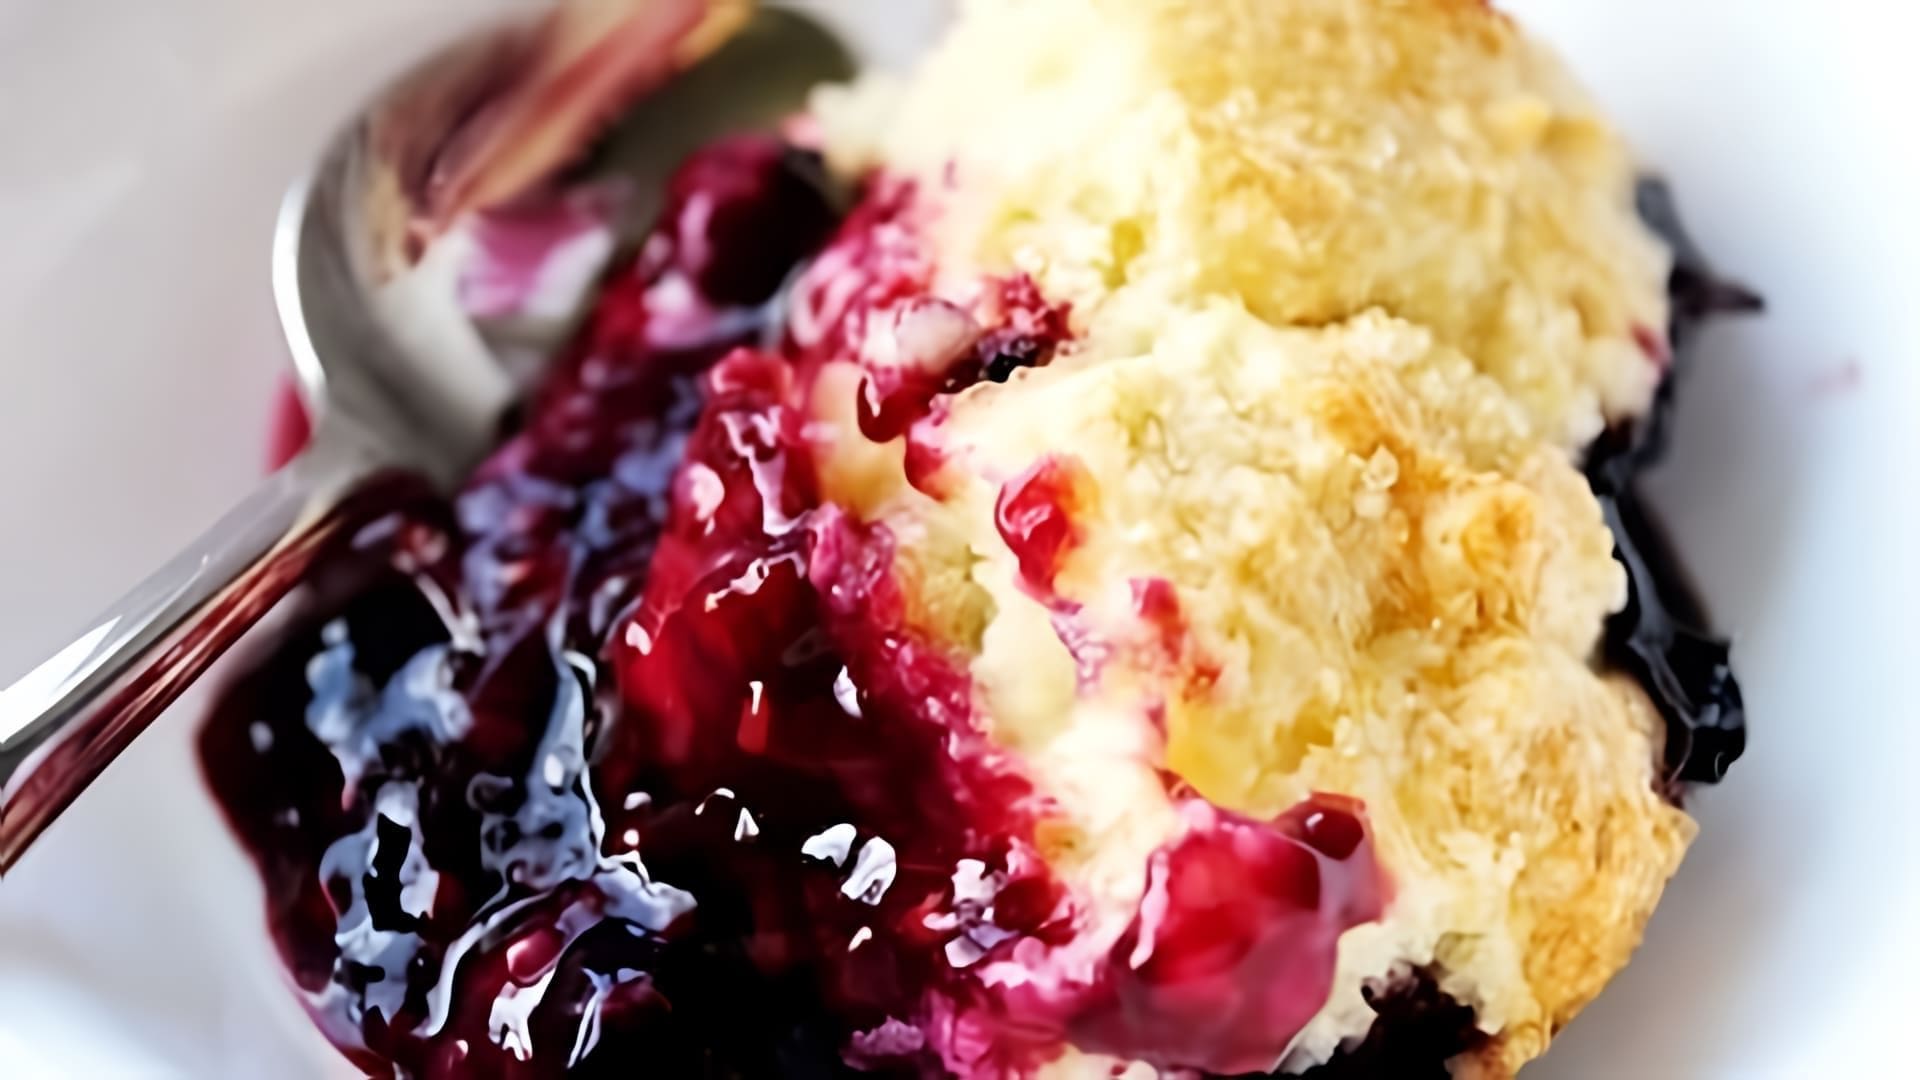 В этом видео демонстрируется рецепт очень вкусного пирога из замороженных ягод